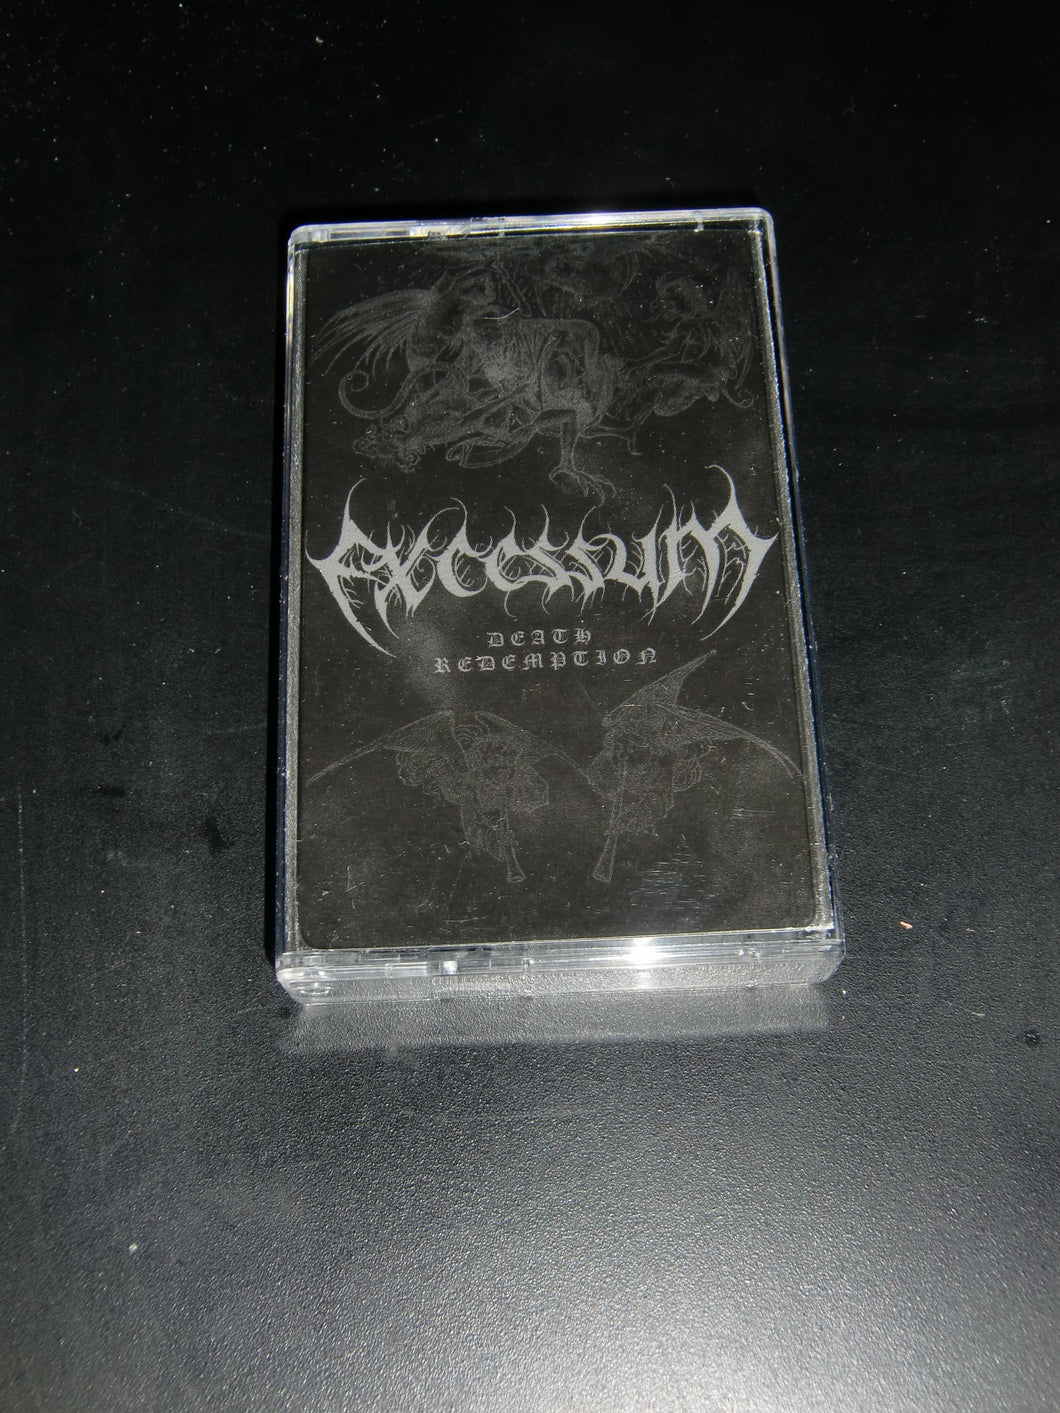 Excessum - Death Redemption Cassette